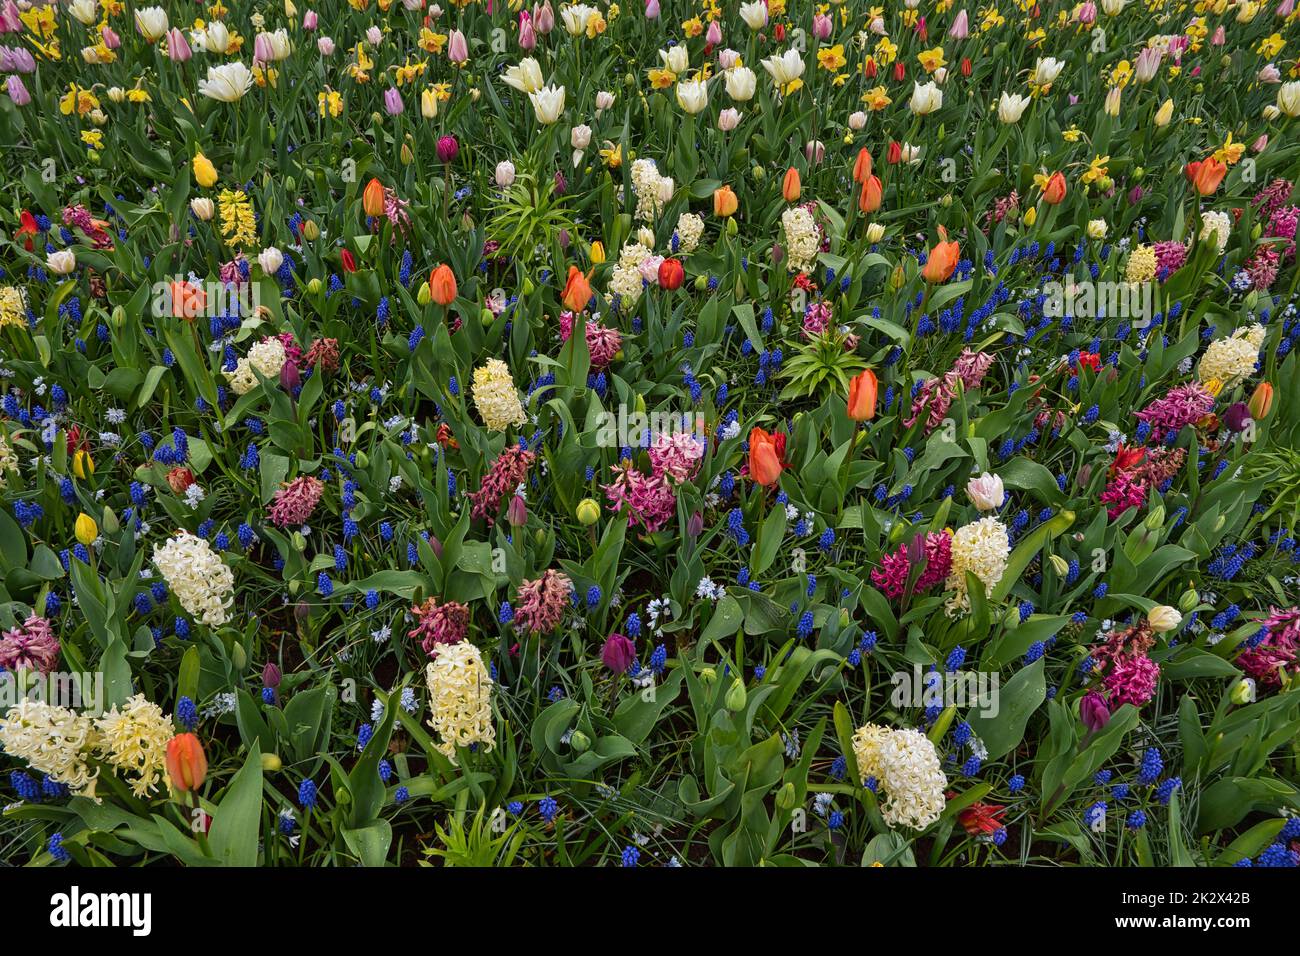 Prato fiorito con fiori in diversi colori Foto Stock